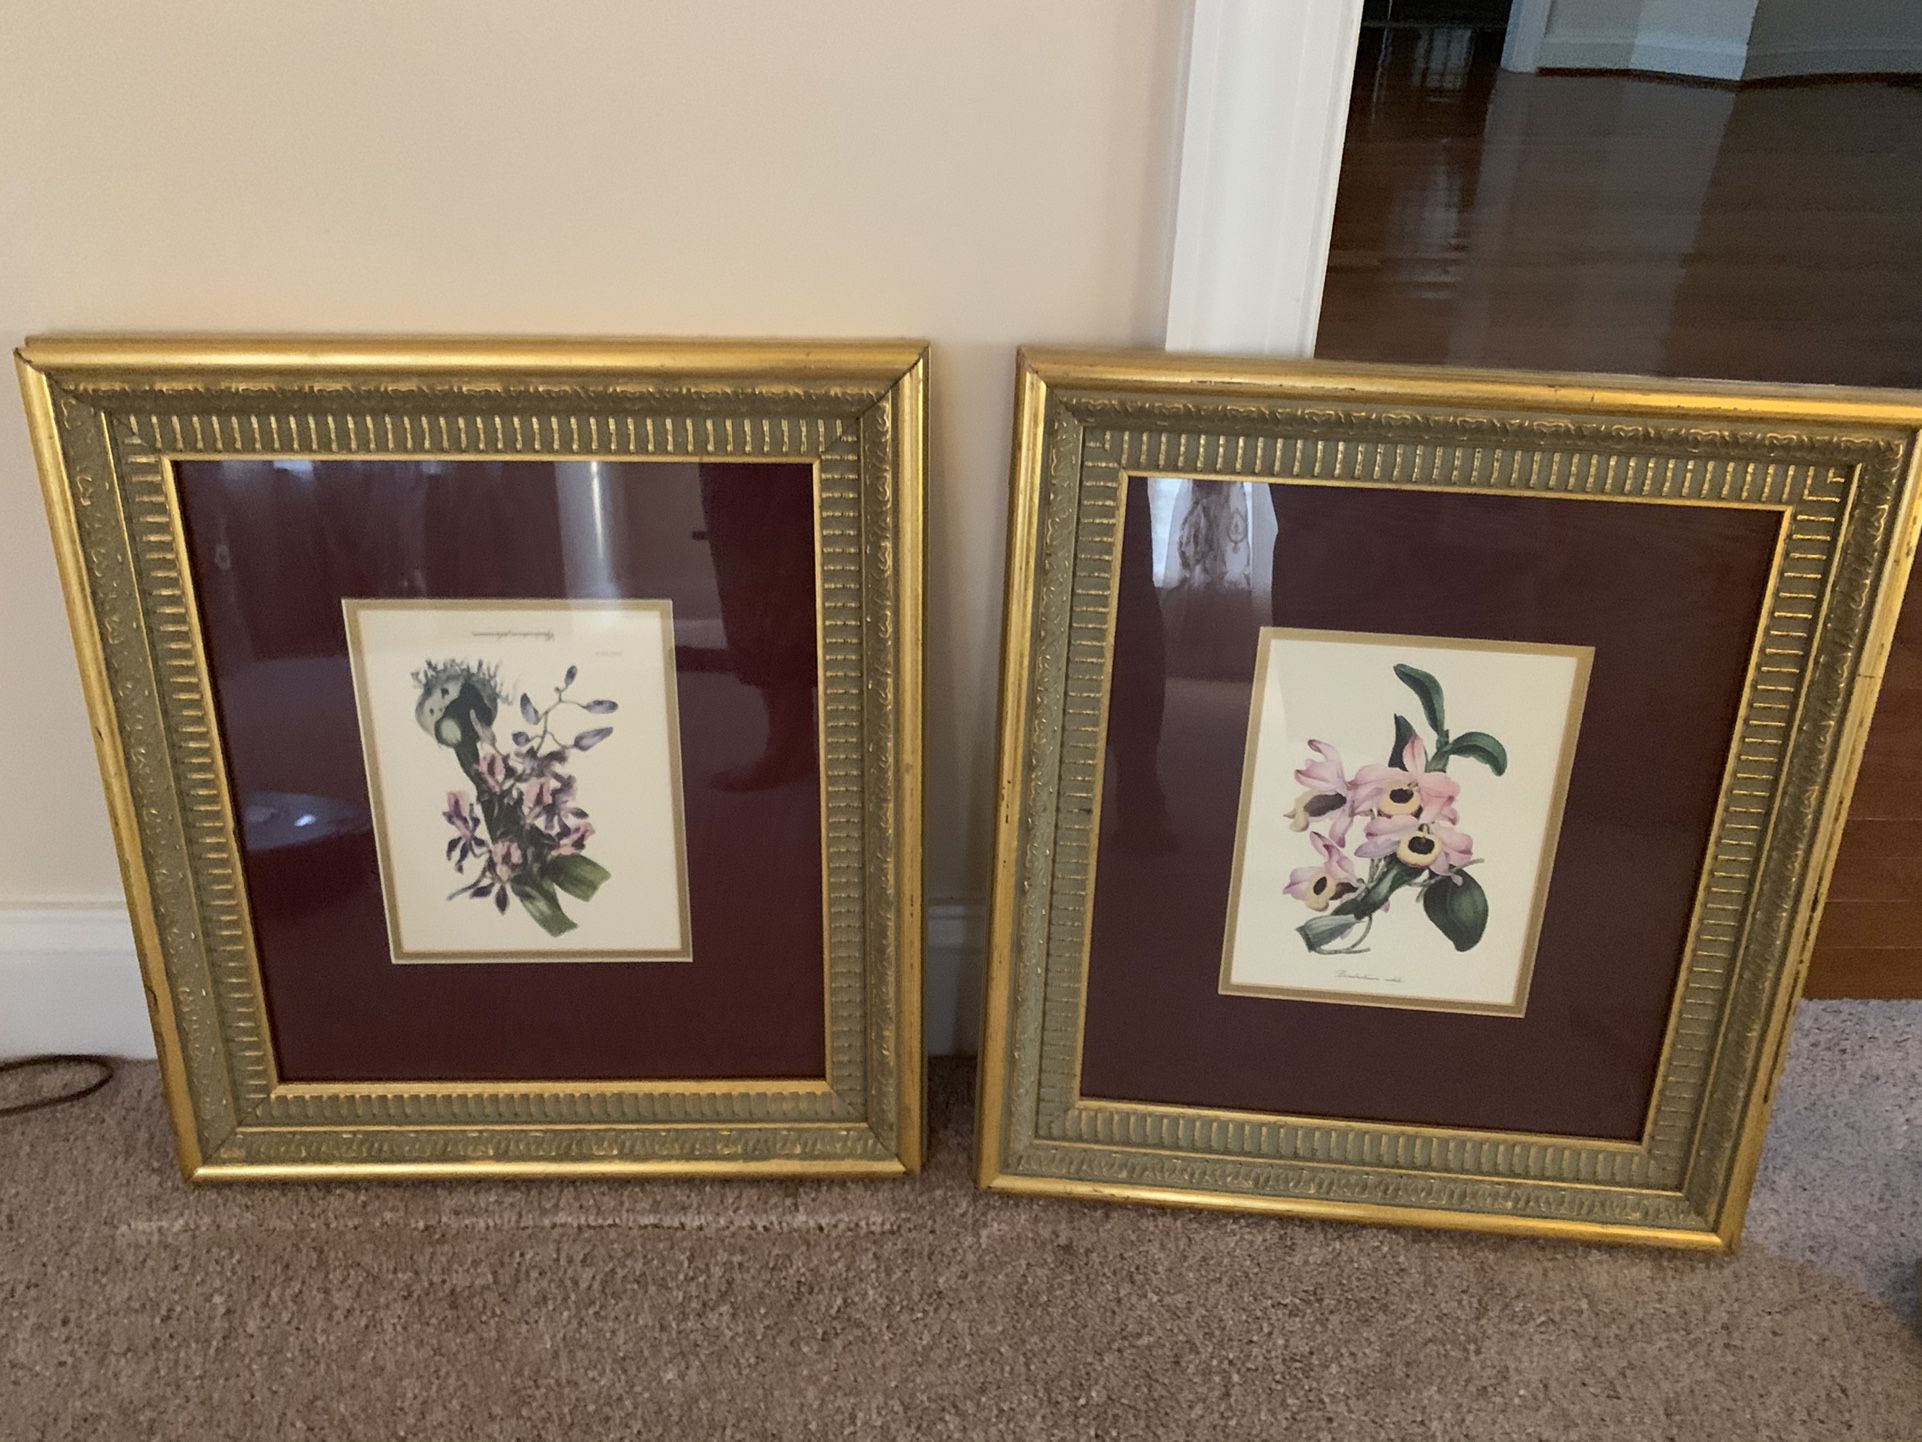 2 Ornate framed pictures